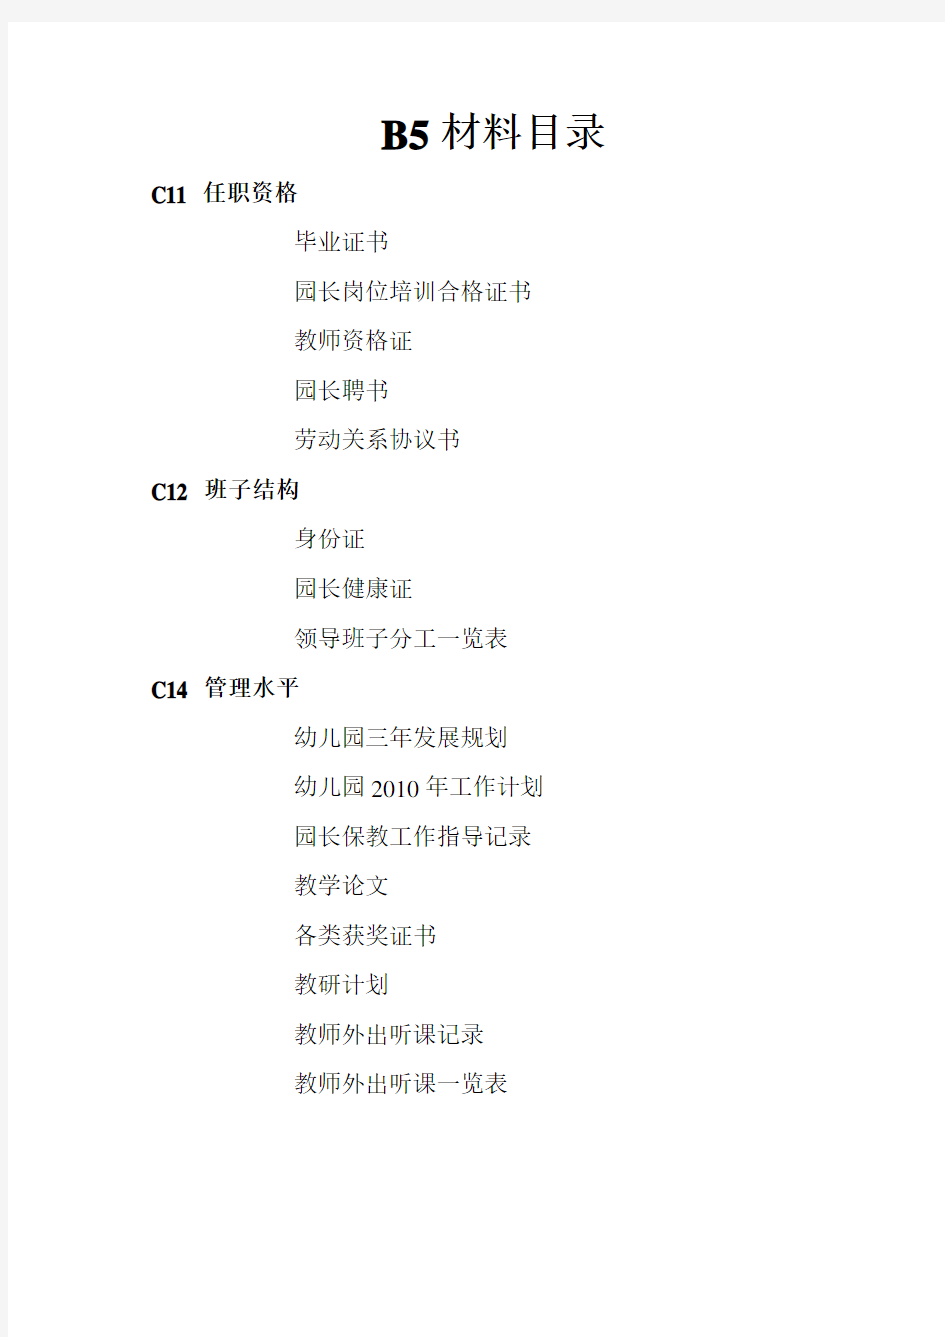 南京市幼儿园办园标准及评估细则-Microsoft-Word-文档